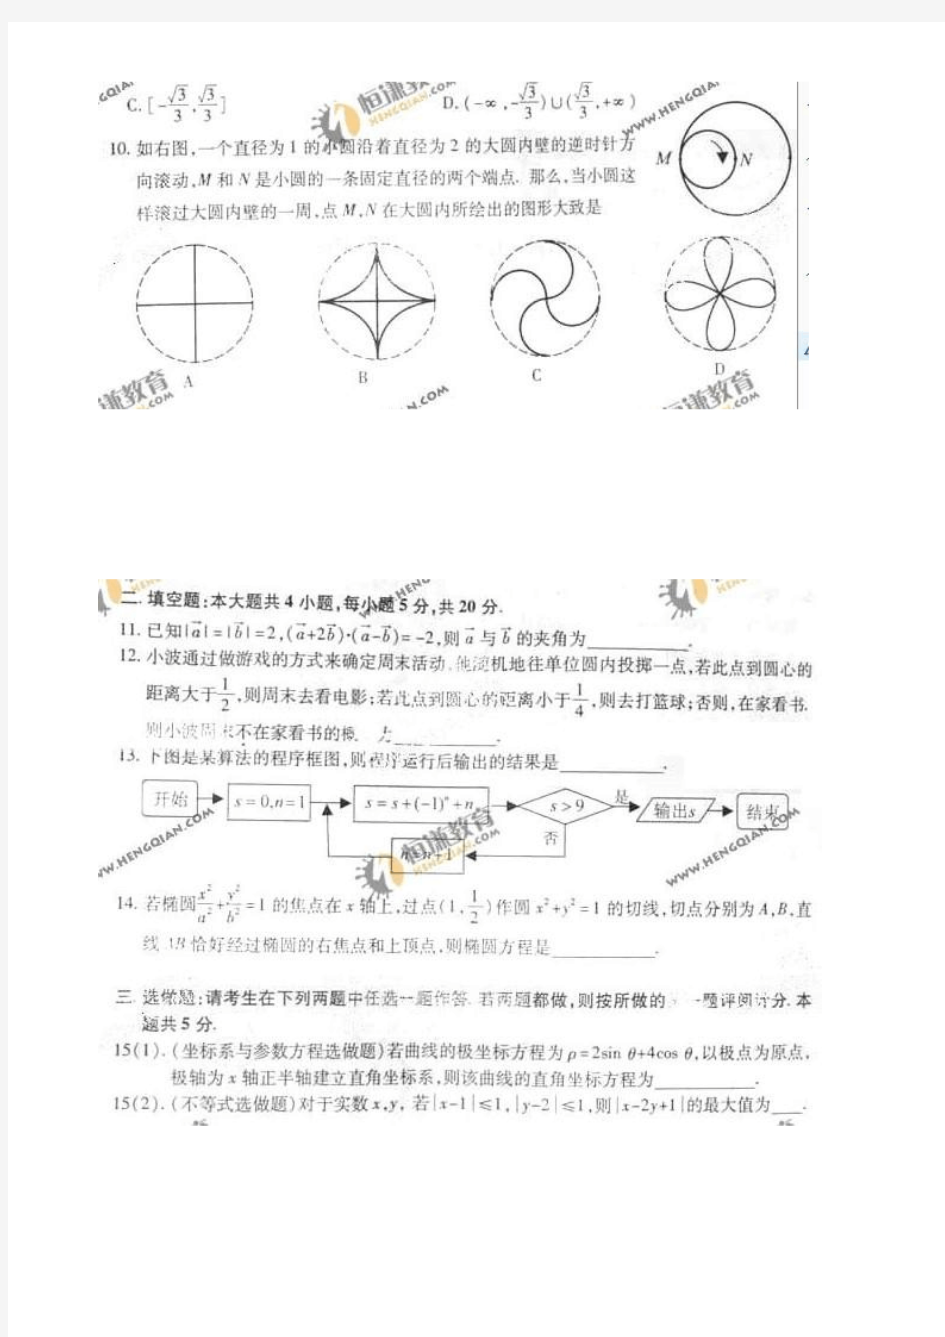 2011年江西高考理科数学及答案